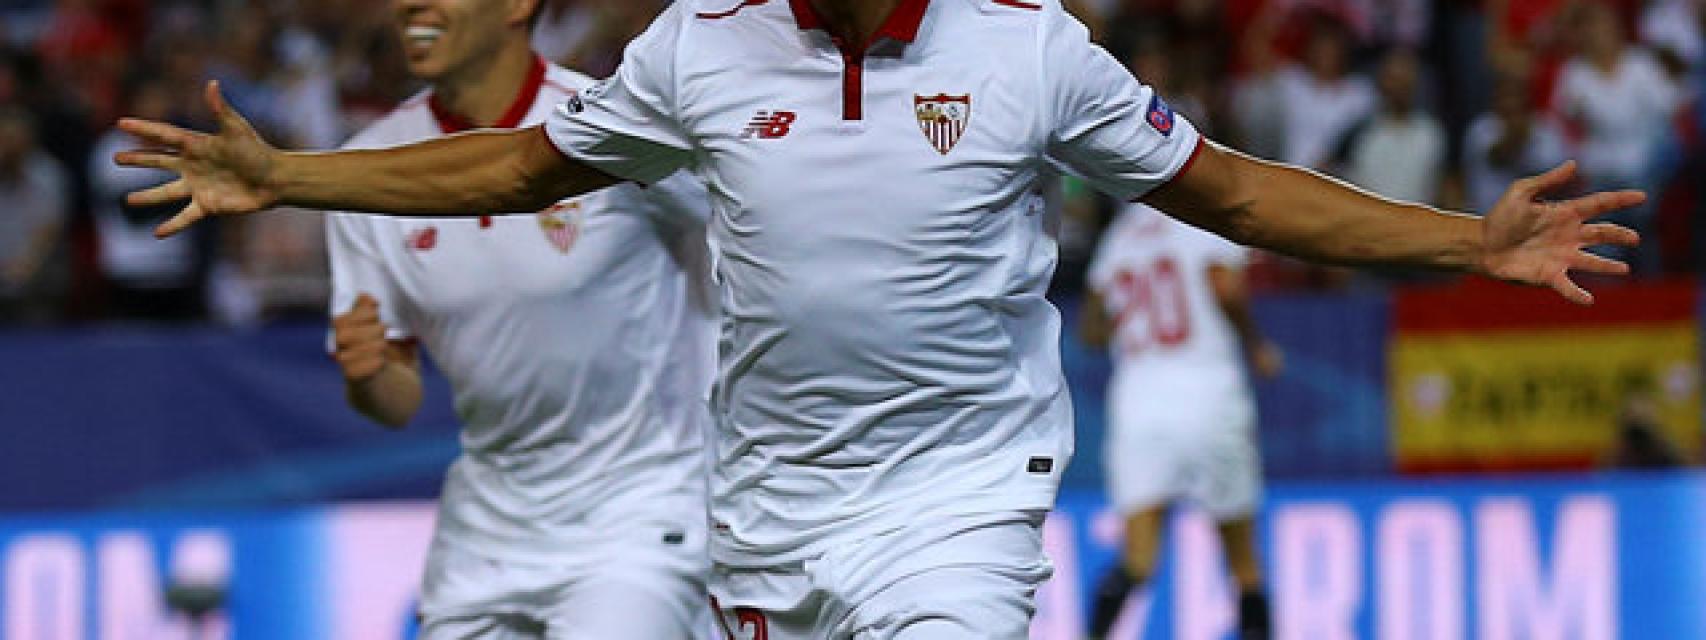 Siga en vivo el partido entre Sevilla y Alavés